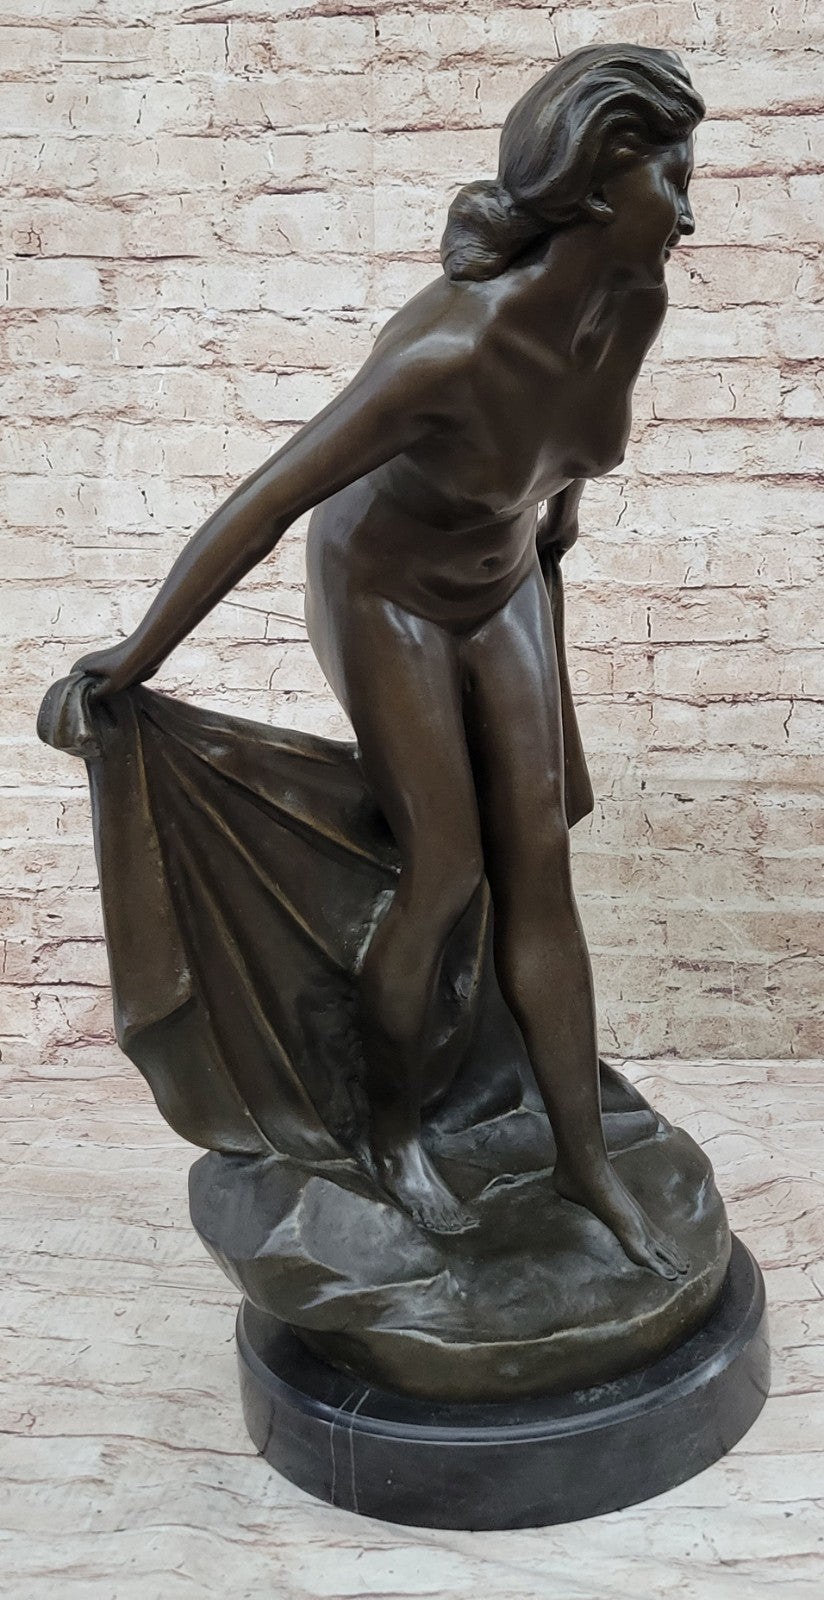 Stunning Nude Woman Showering Bronze Sculpture Lost Wax Method Artwork